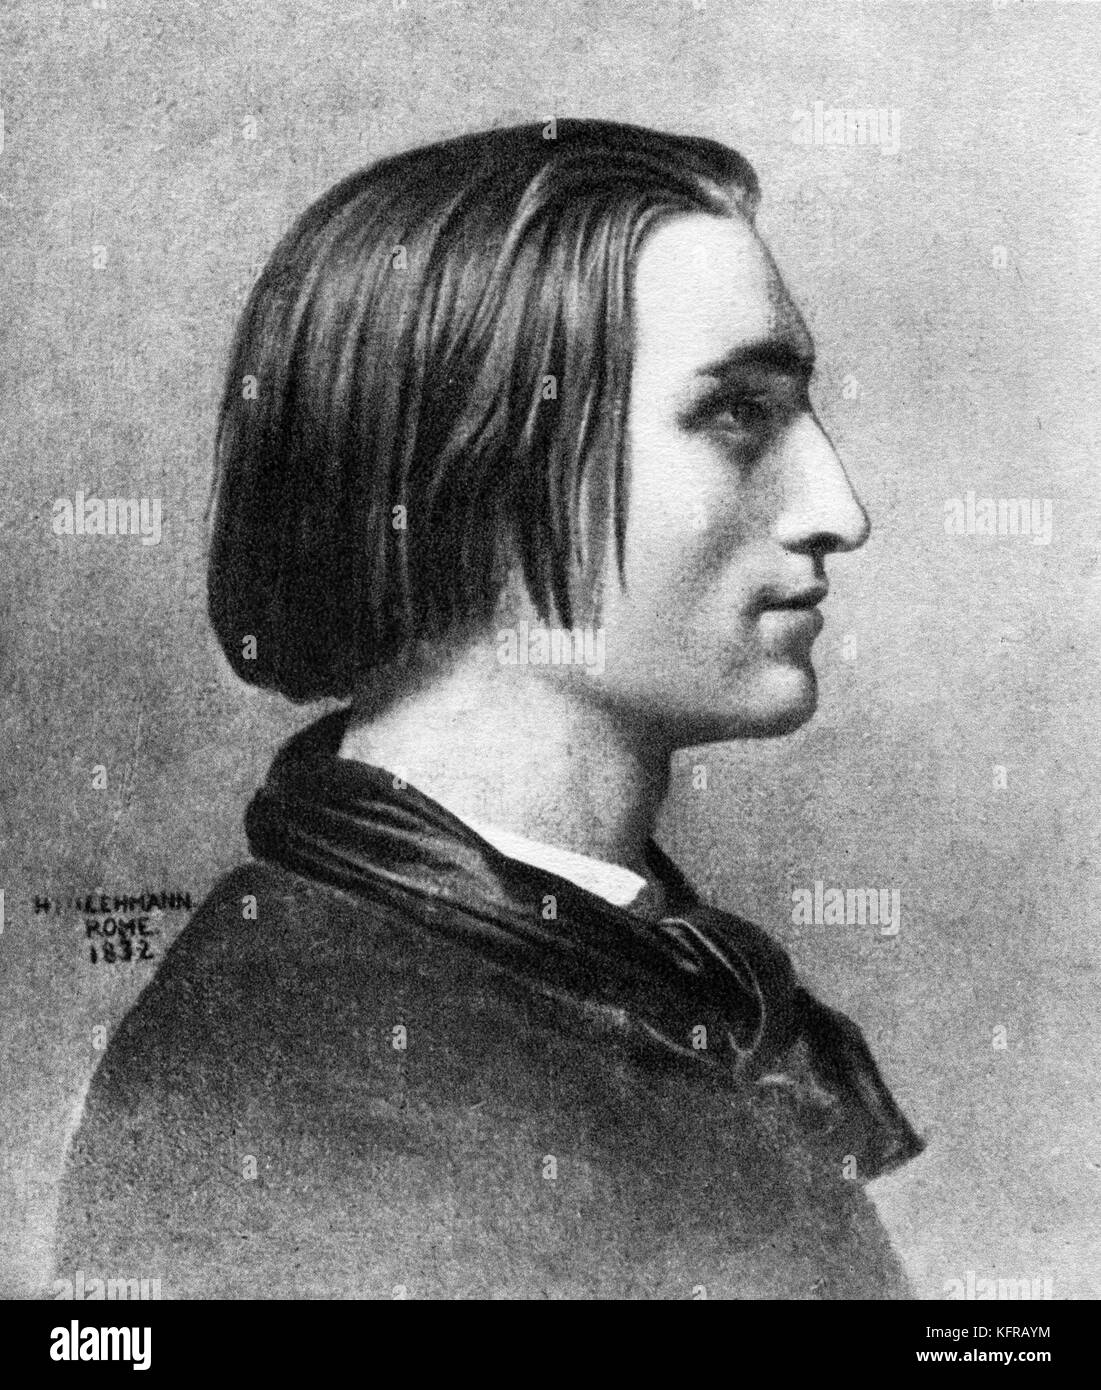 Franz Liszt - après portrait par Henri Lehmann, c. 1839, Rome, Italie. Compositeur et pianiste hongrois, 22 octobre 1811 - 31 juillet 1886. Banque D'Images